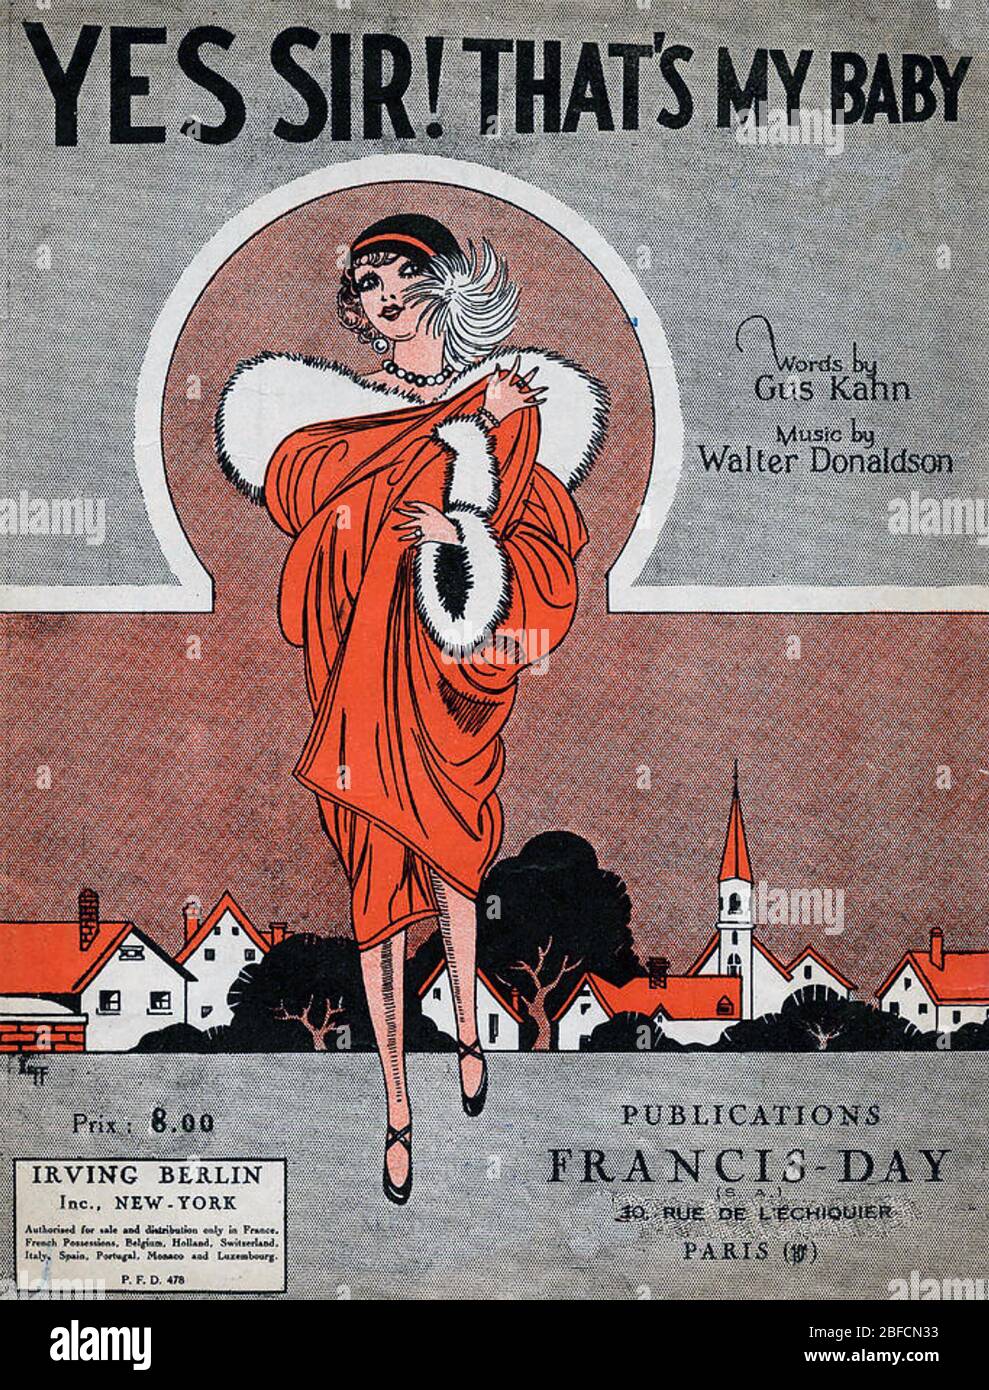 JA SIR, DAS;S MEIN BABY Cover der Noten für den Song von Walter Donaldson (Musik) und Gus Kahn (Texte) von 1925 Stockfoto